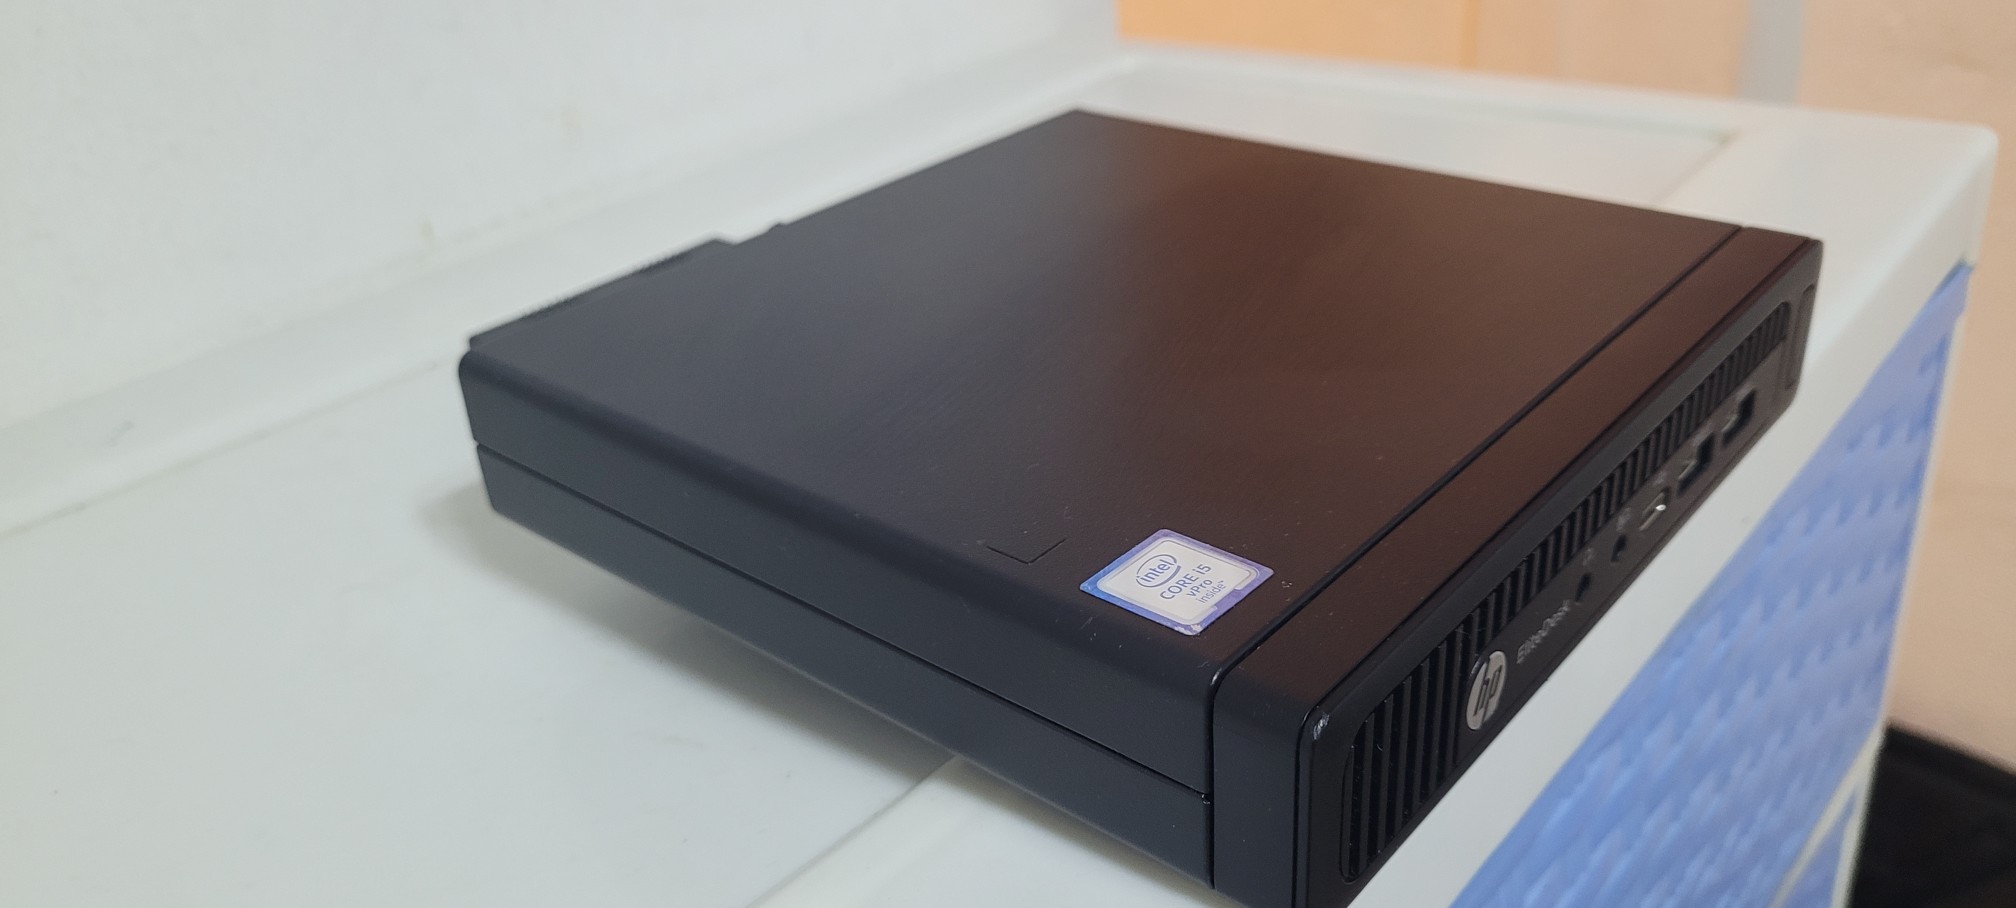 computadoras y laptops - Mini Desktop hp Core i5 6ta Gen Ram 8gb ddr4 Disco m2 512gb SSD USB 3.0 1